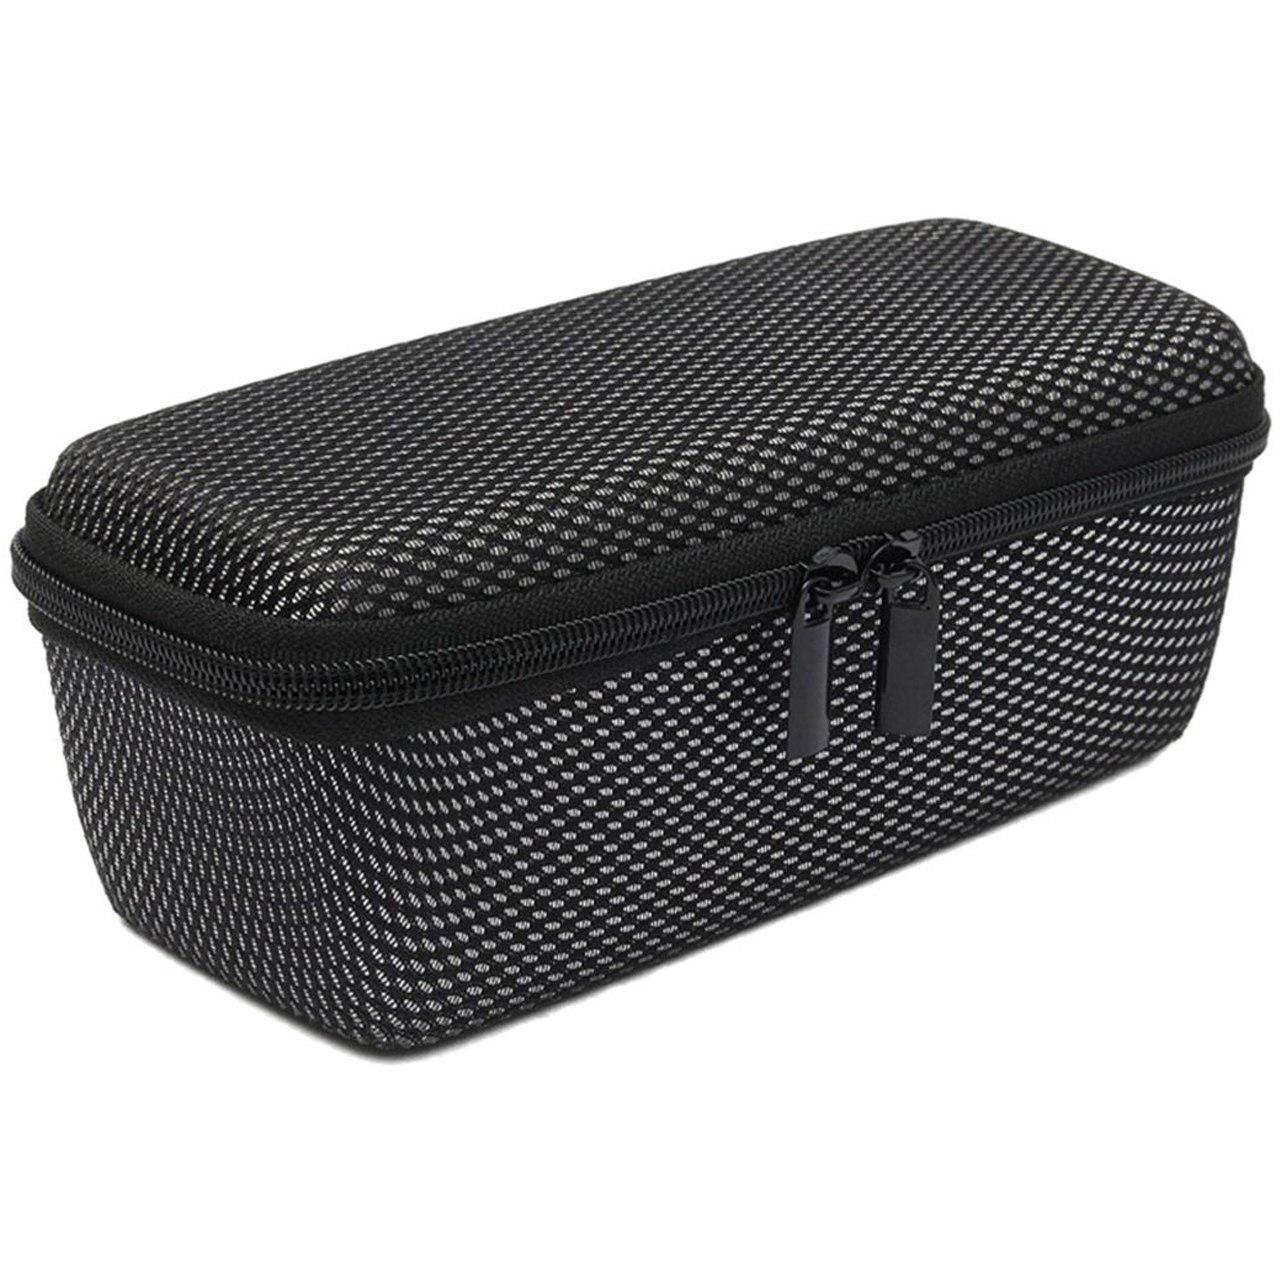 کیف حمل اسپیکر گرید مناسب برای مدل فلیپ 3 و فلیپ 4 مناسب برای اسپیکر جی بی ال